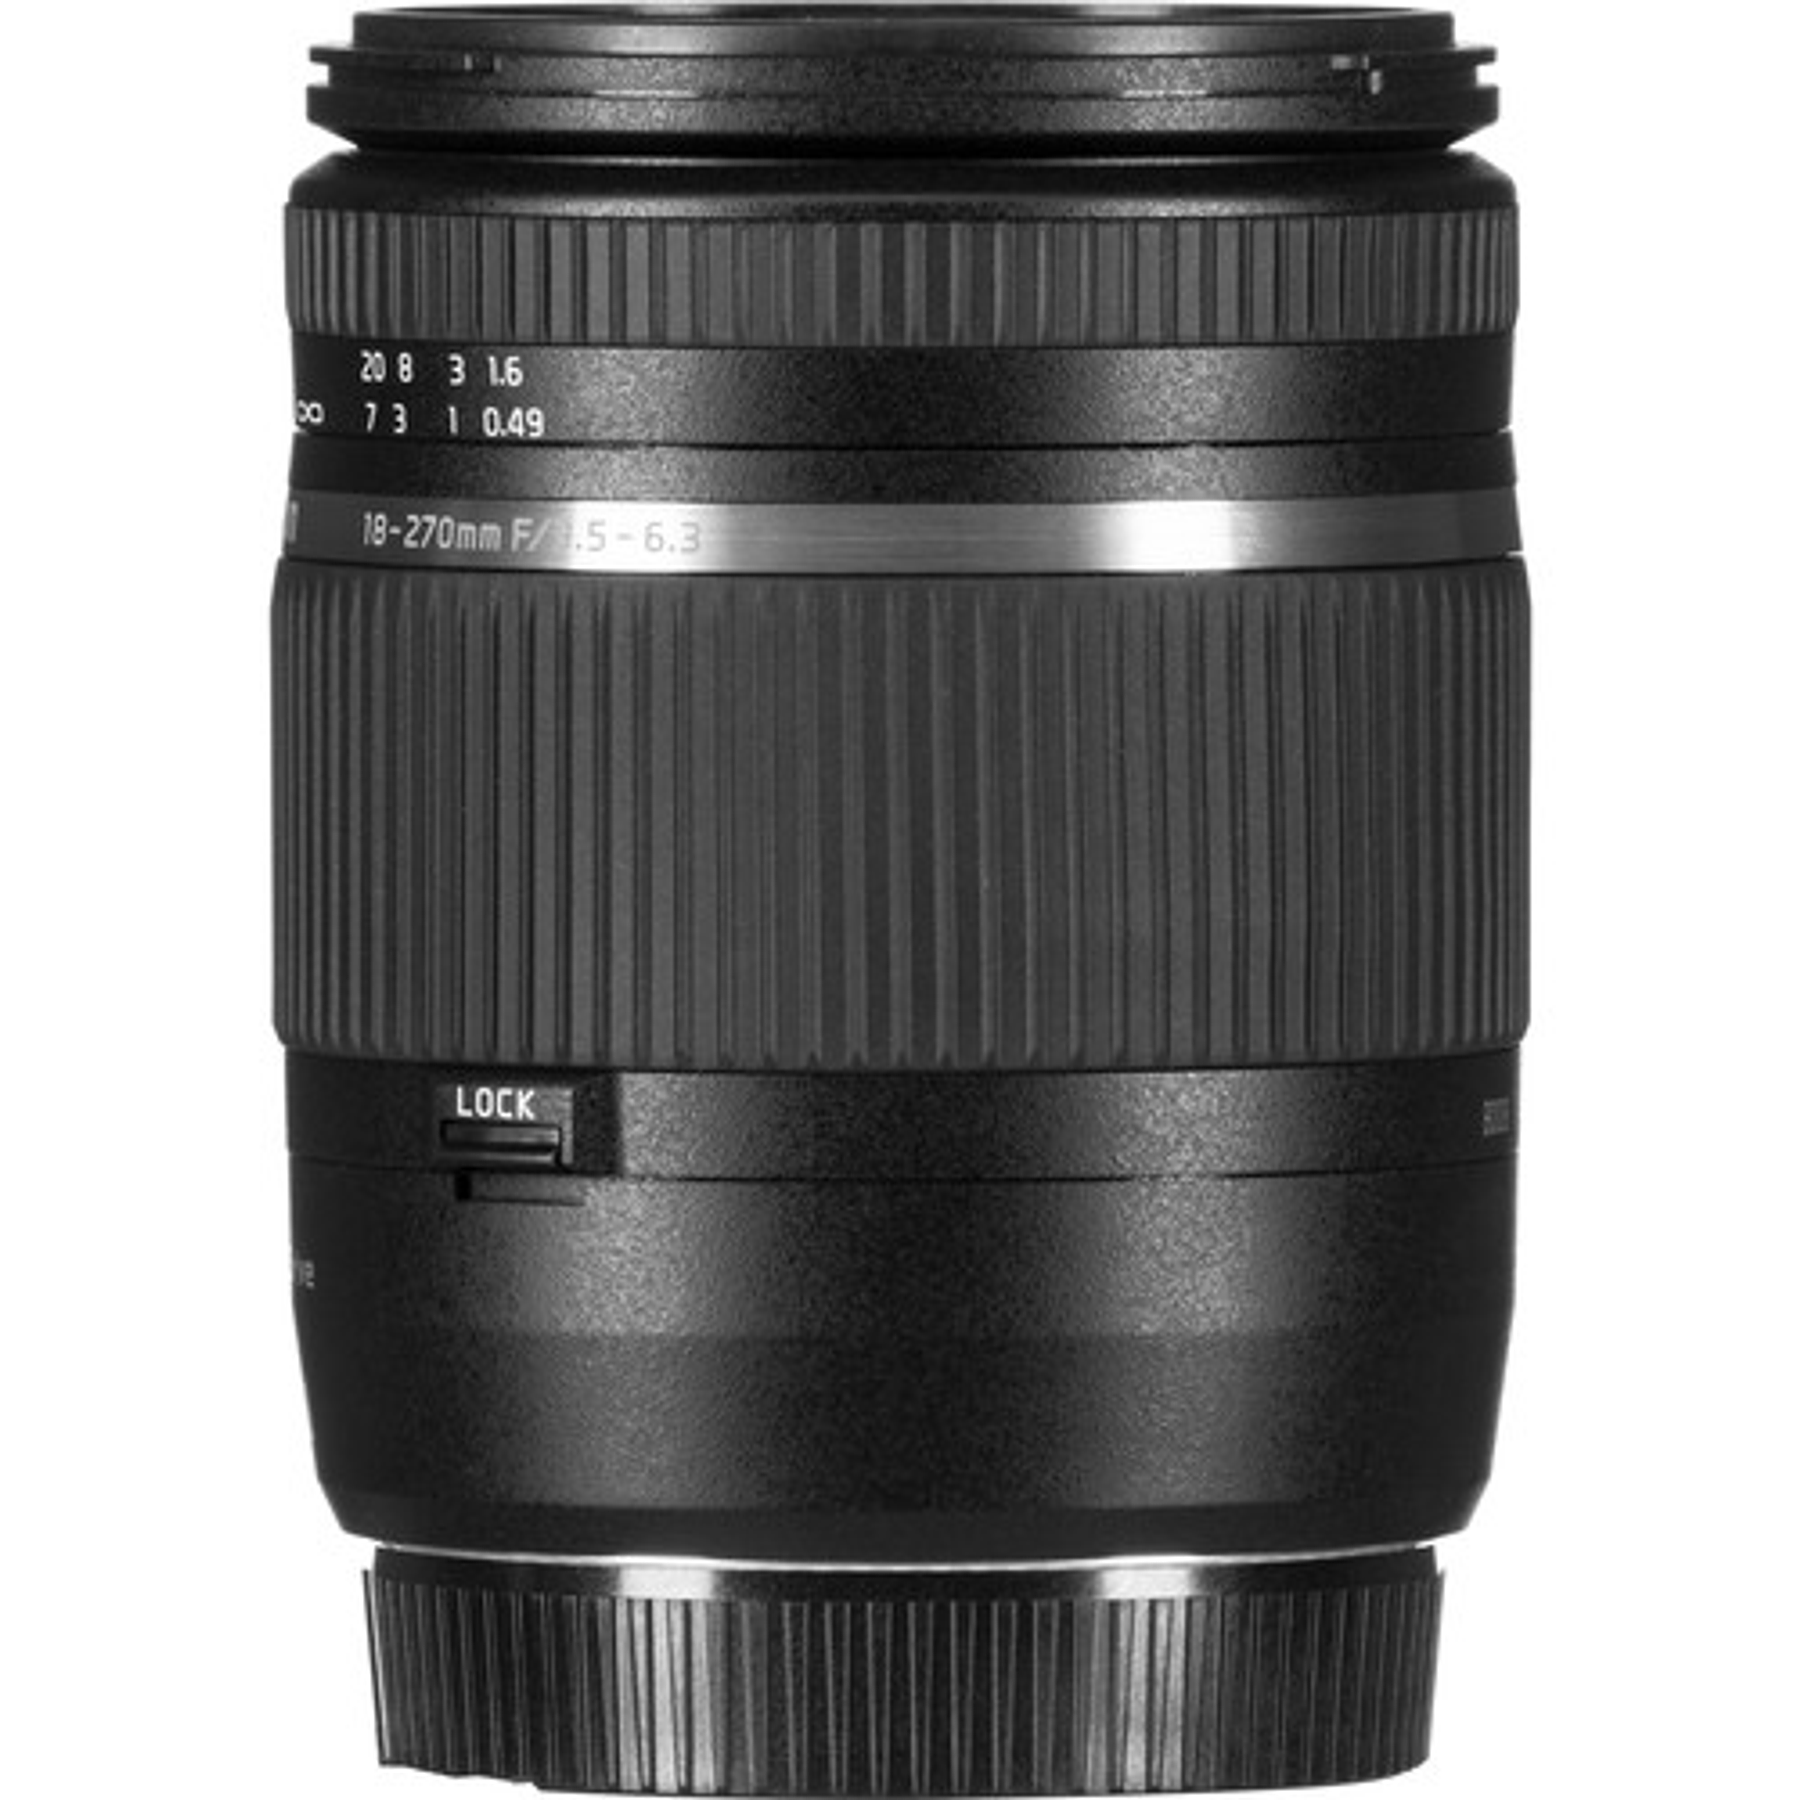 Tamron Lente 18-270mm F/3.5-6.3 para Canon/Nikon